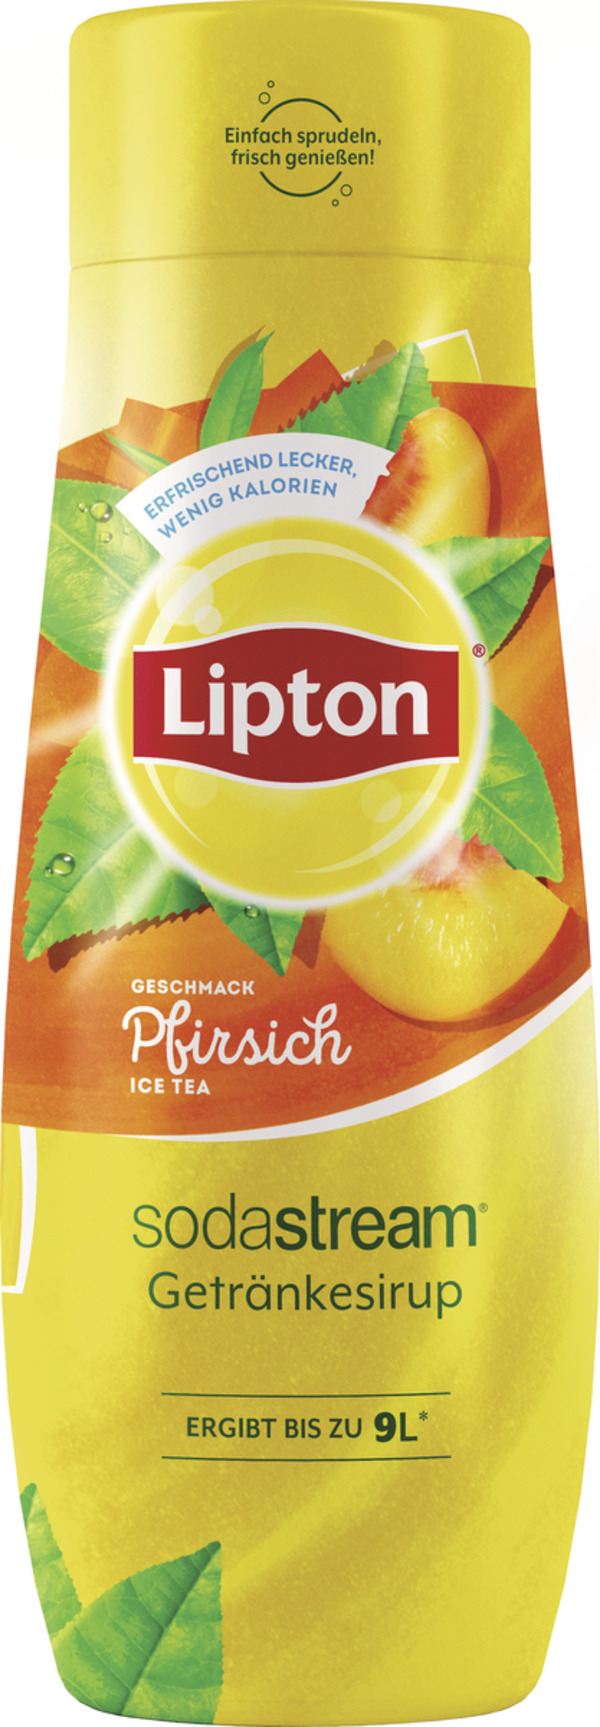 Bild 1 von SodaStream Lipton Ice Tea Pfirsich Sirup